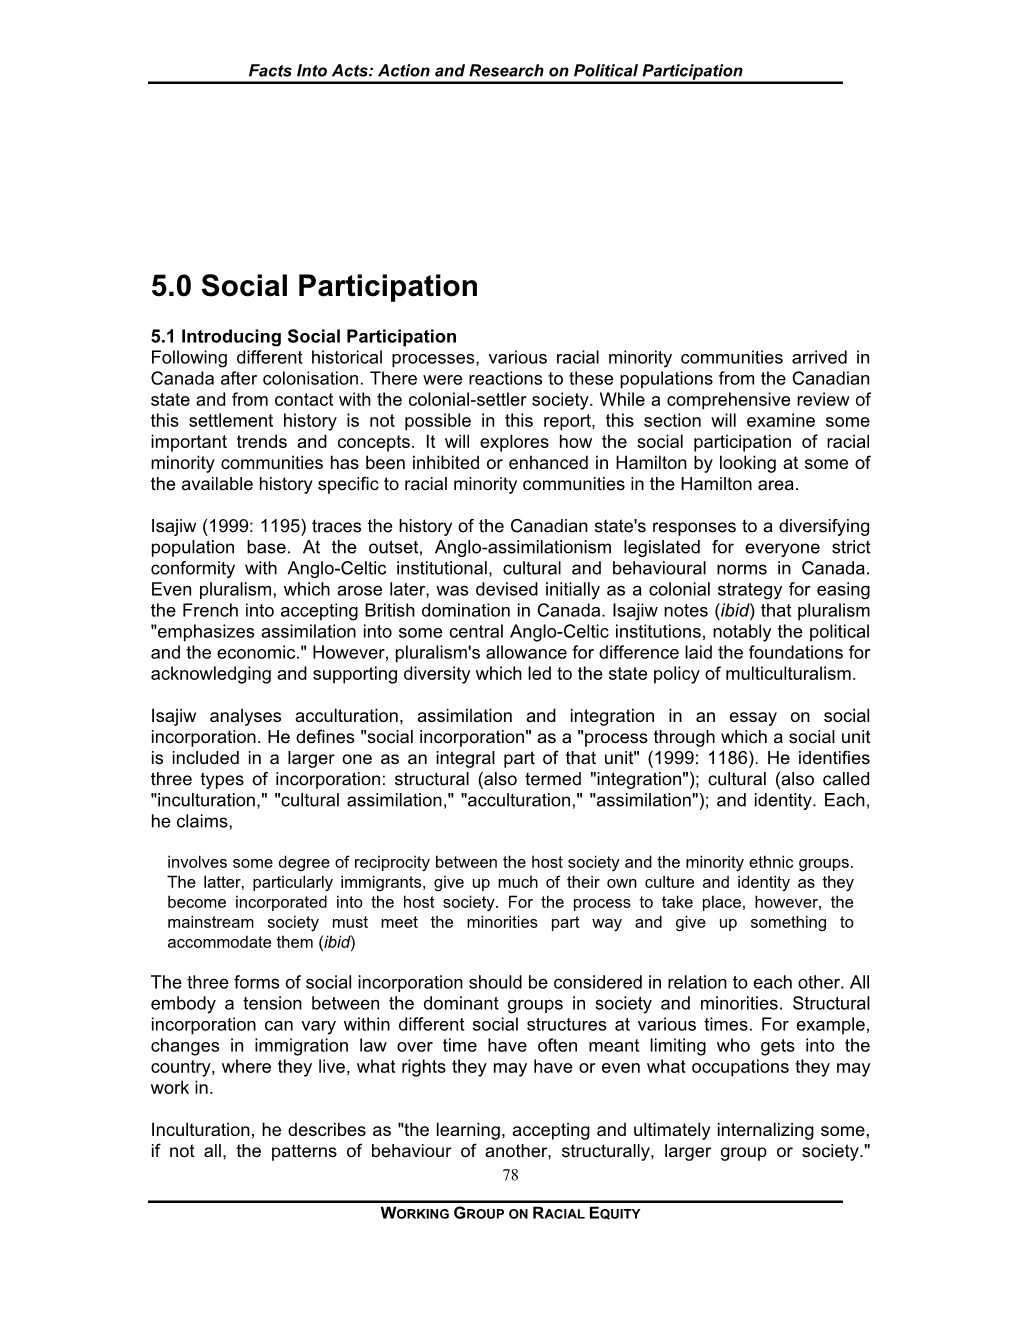 5.0 Social Participation